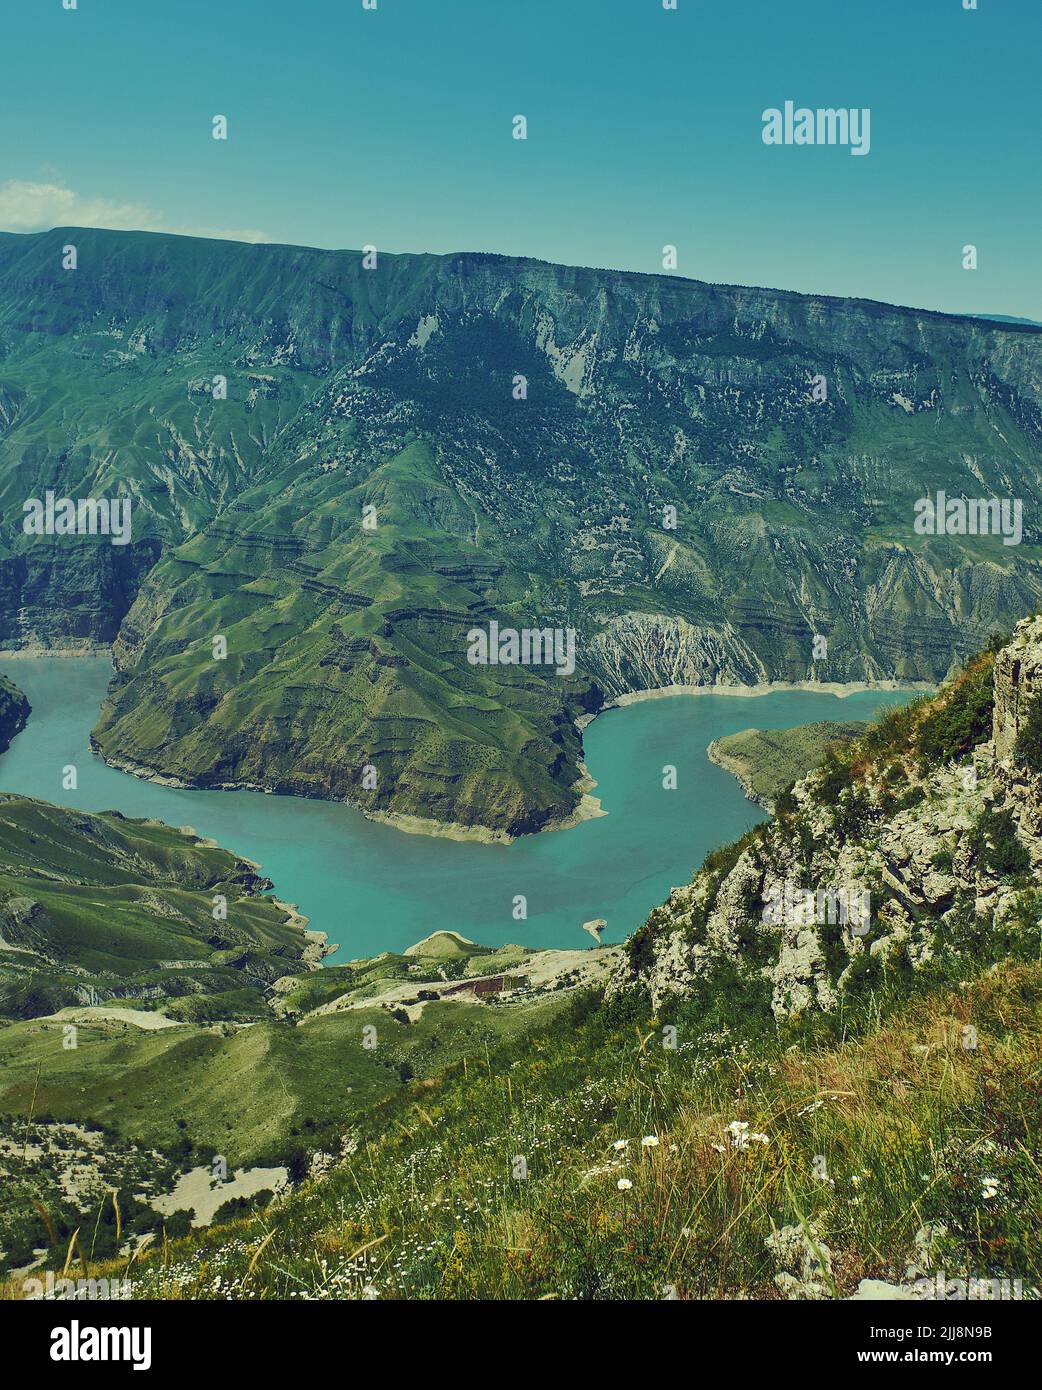 Cañón Sulak, el cañón más profundo de los lados escarpados de Europa tallado por el río Sulak en Dagestán, Rusia. Foto de stock